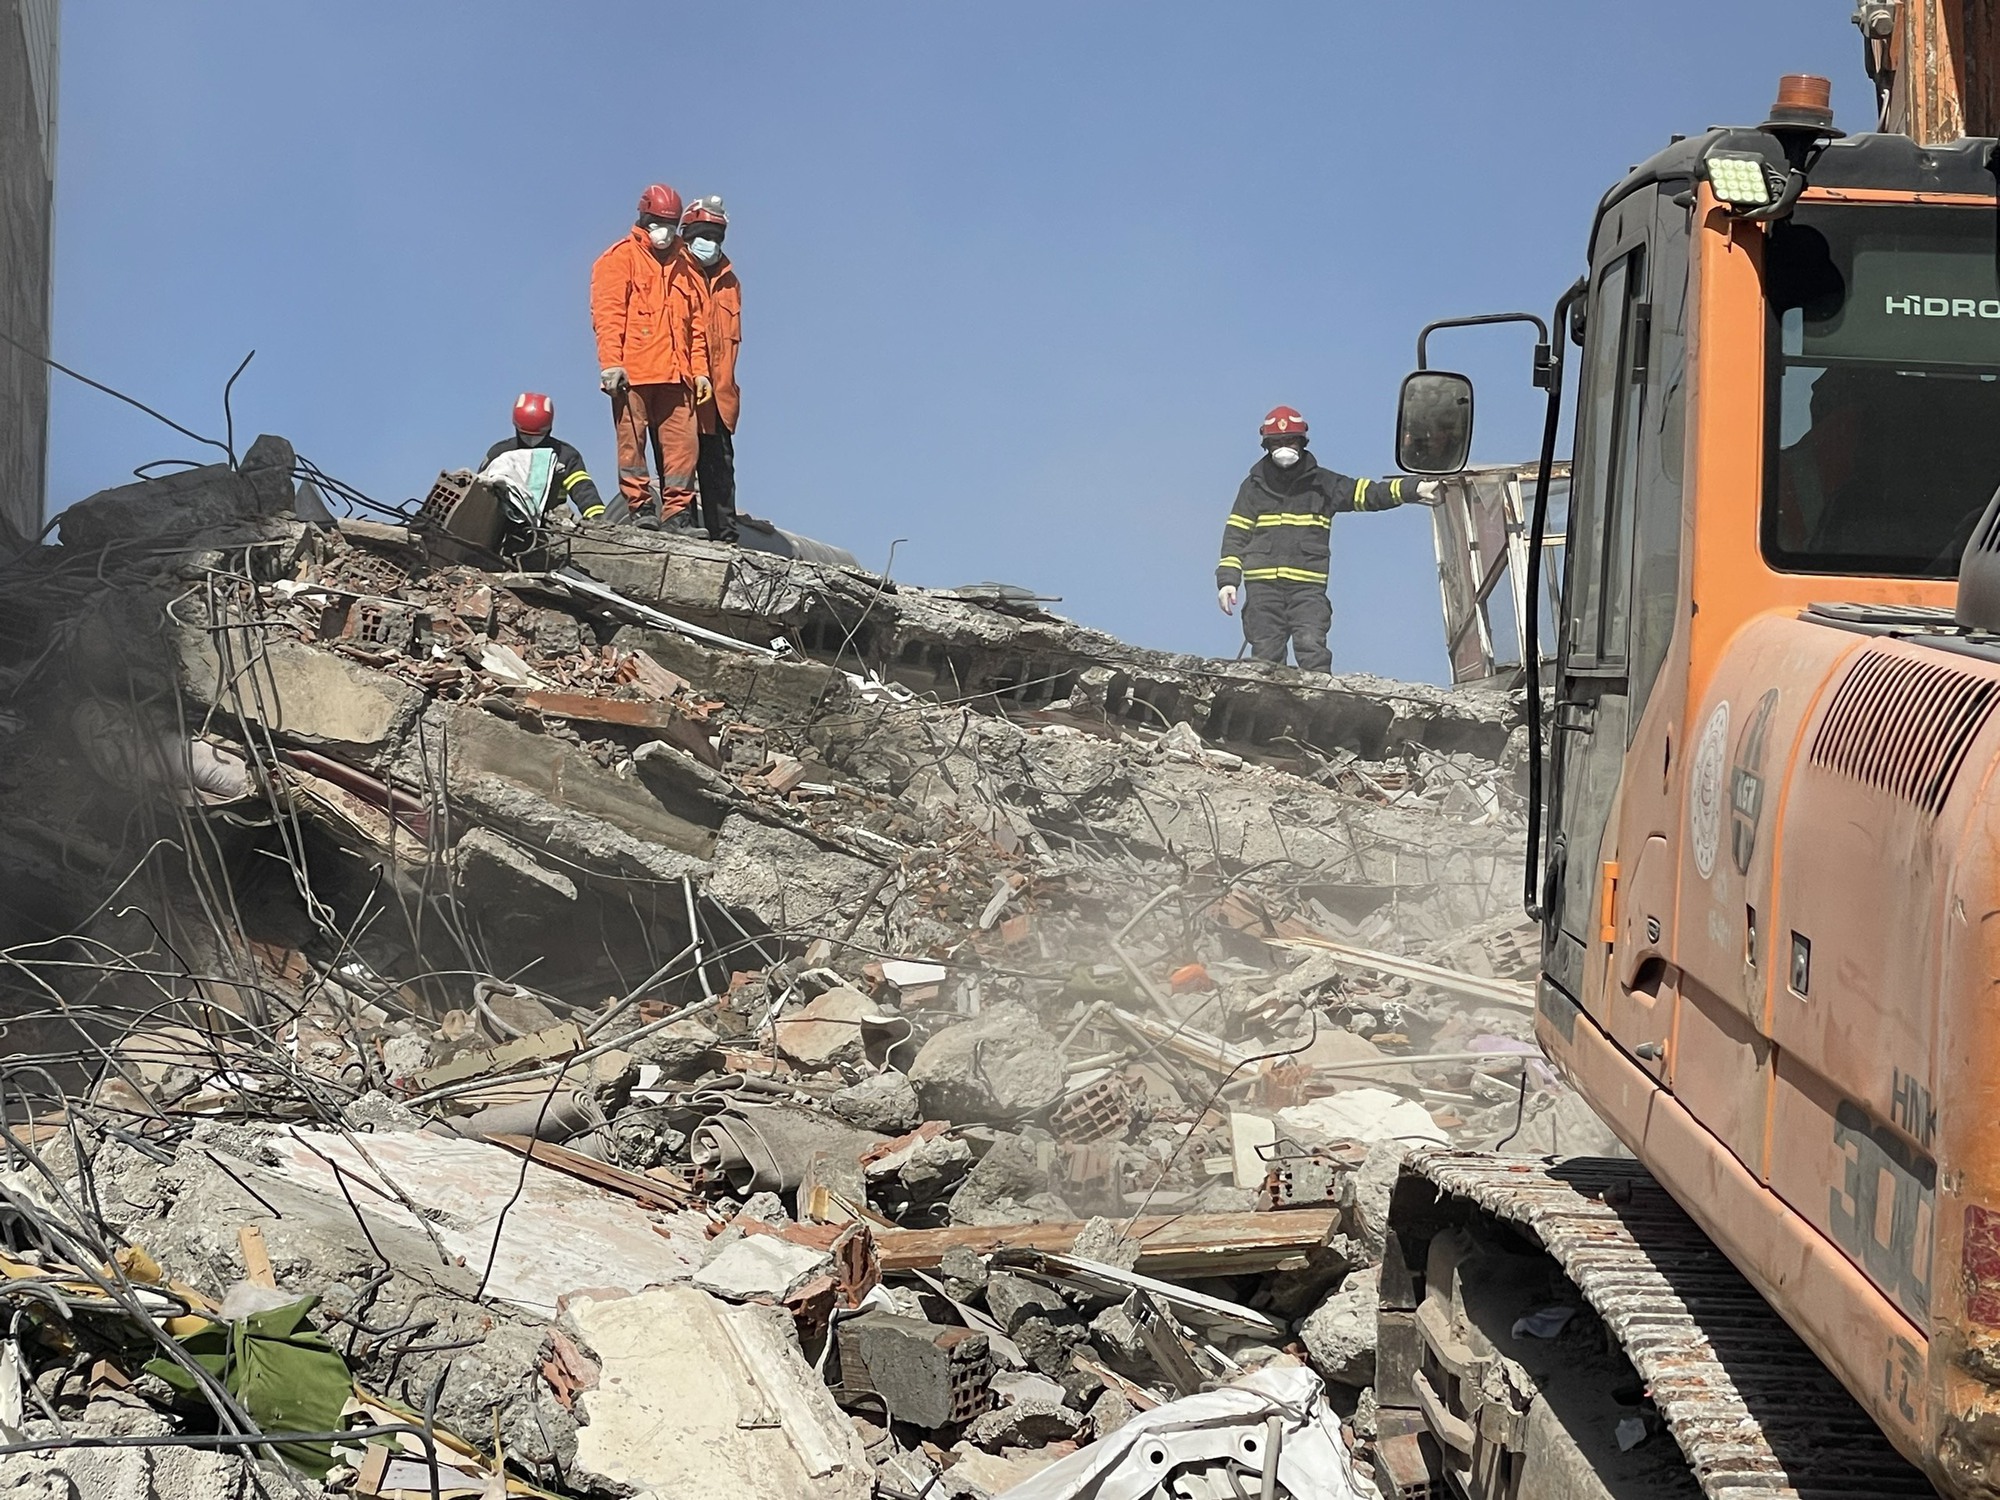 Đội cứu hộ Việt Nam và Pakistan đang nỗ lực đưa 3 nạn nhân tử vong ra ngoài sau động đất ở Thổ Nhĩ Kỳ - Ảnh 1.